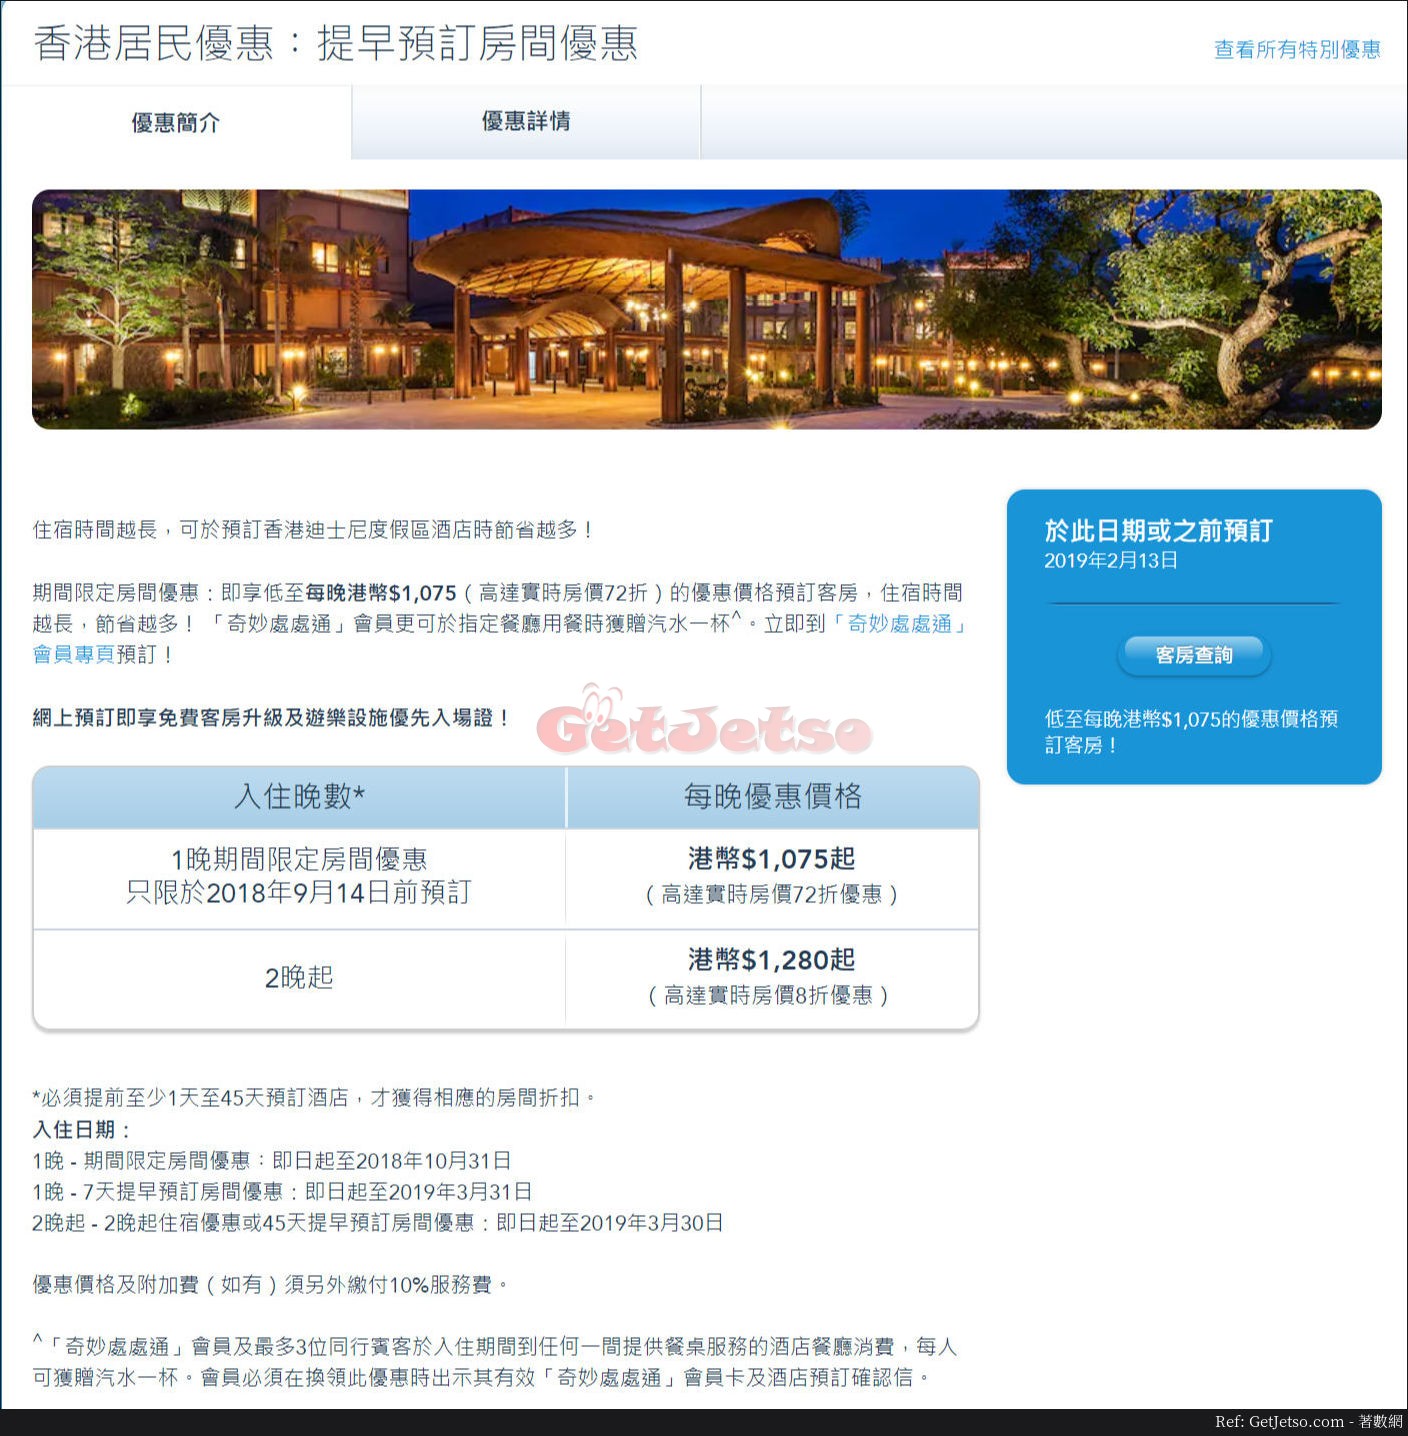 迪士尼樂園酒店低至75香港居民預訂優惠(至18年9月14日)圖片1